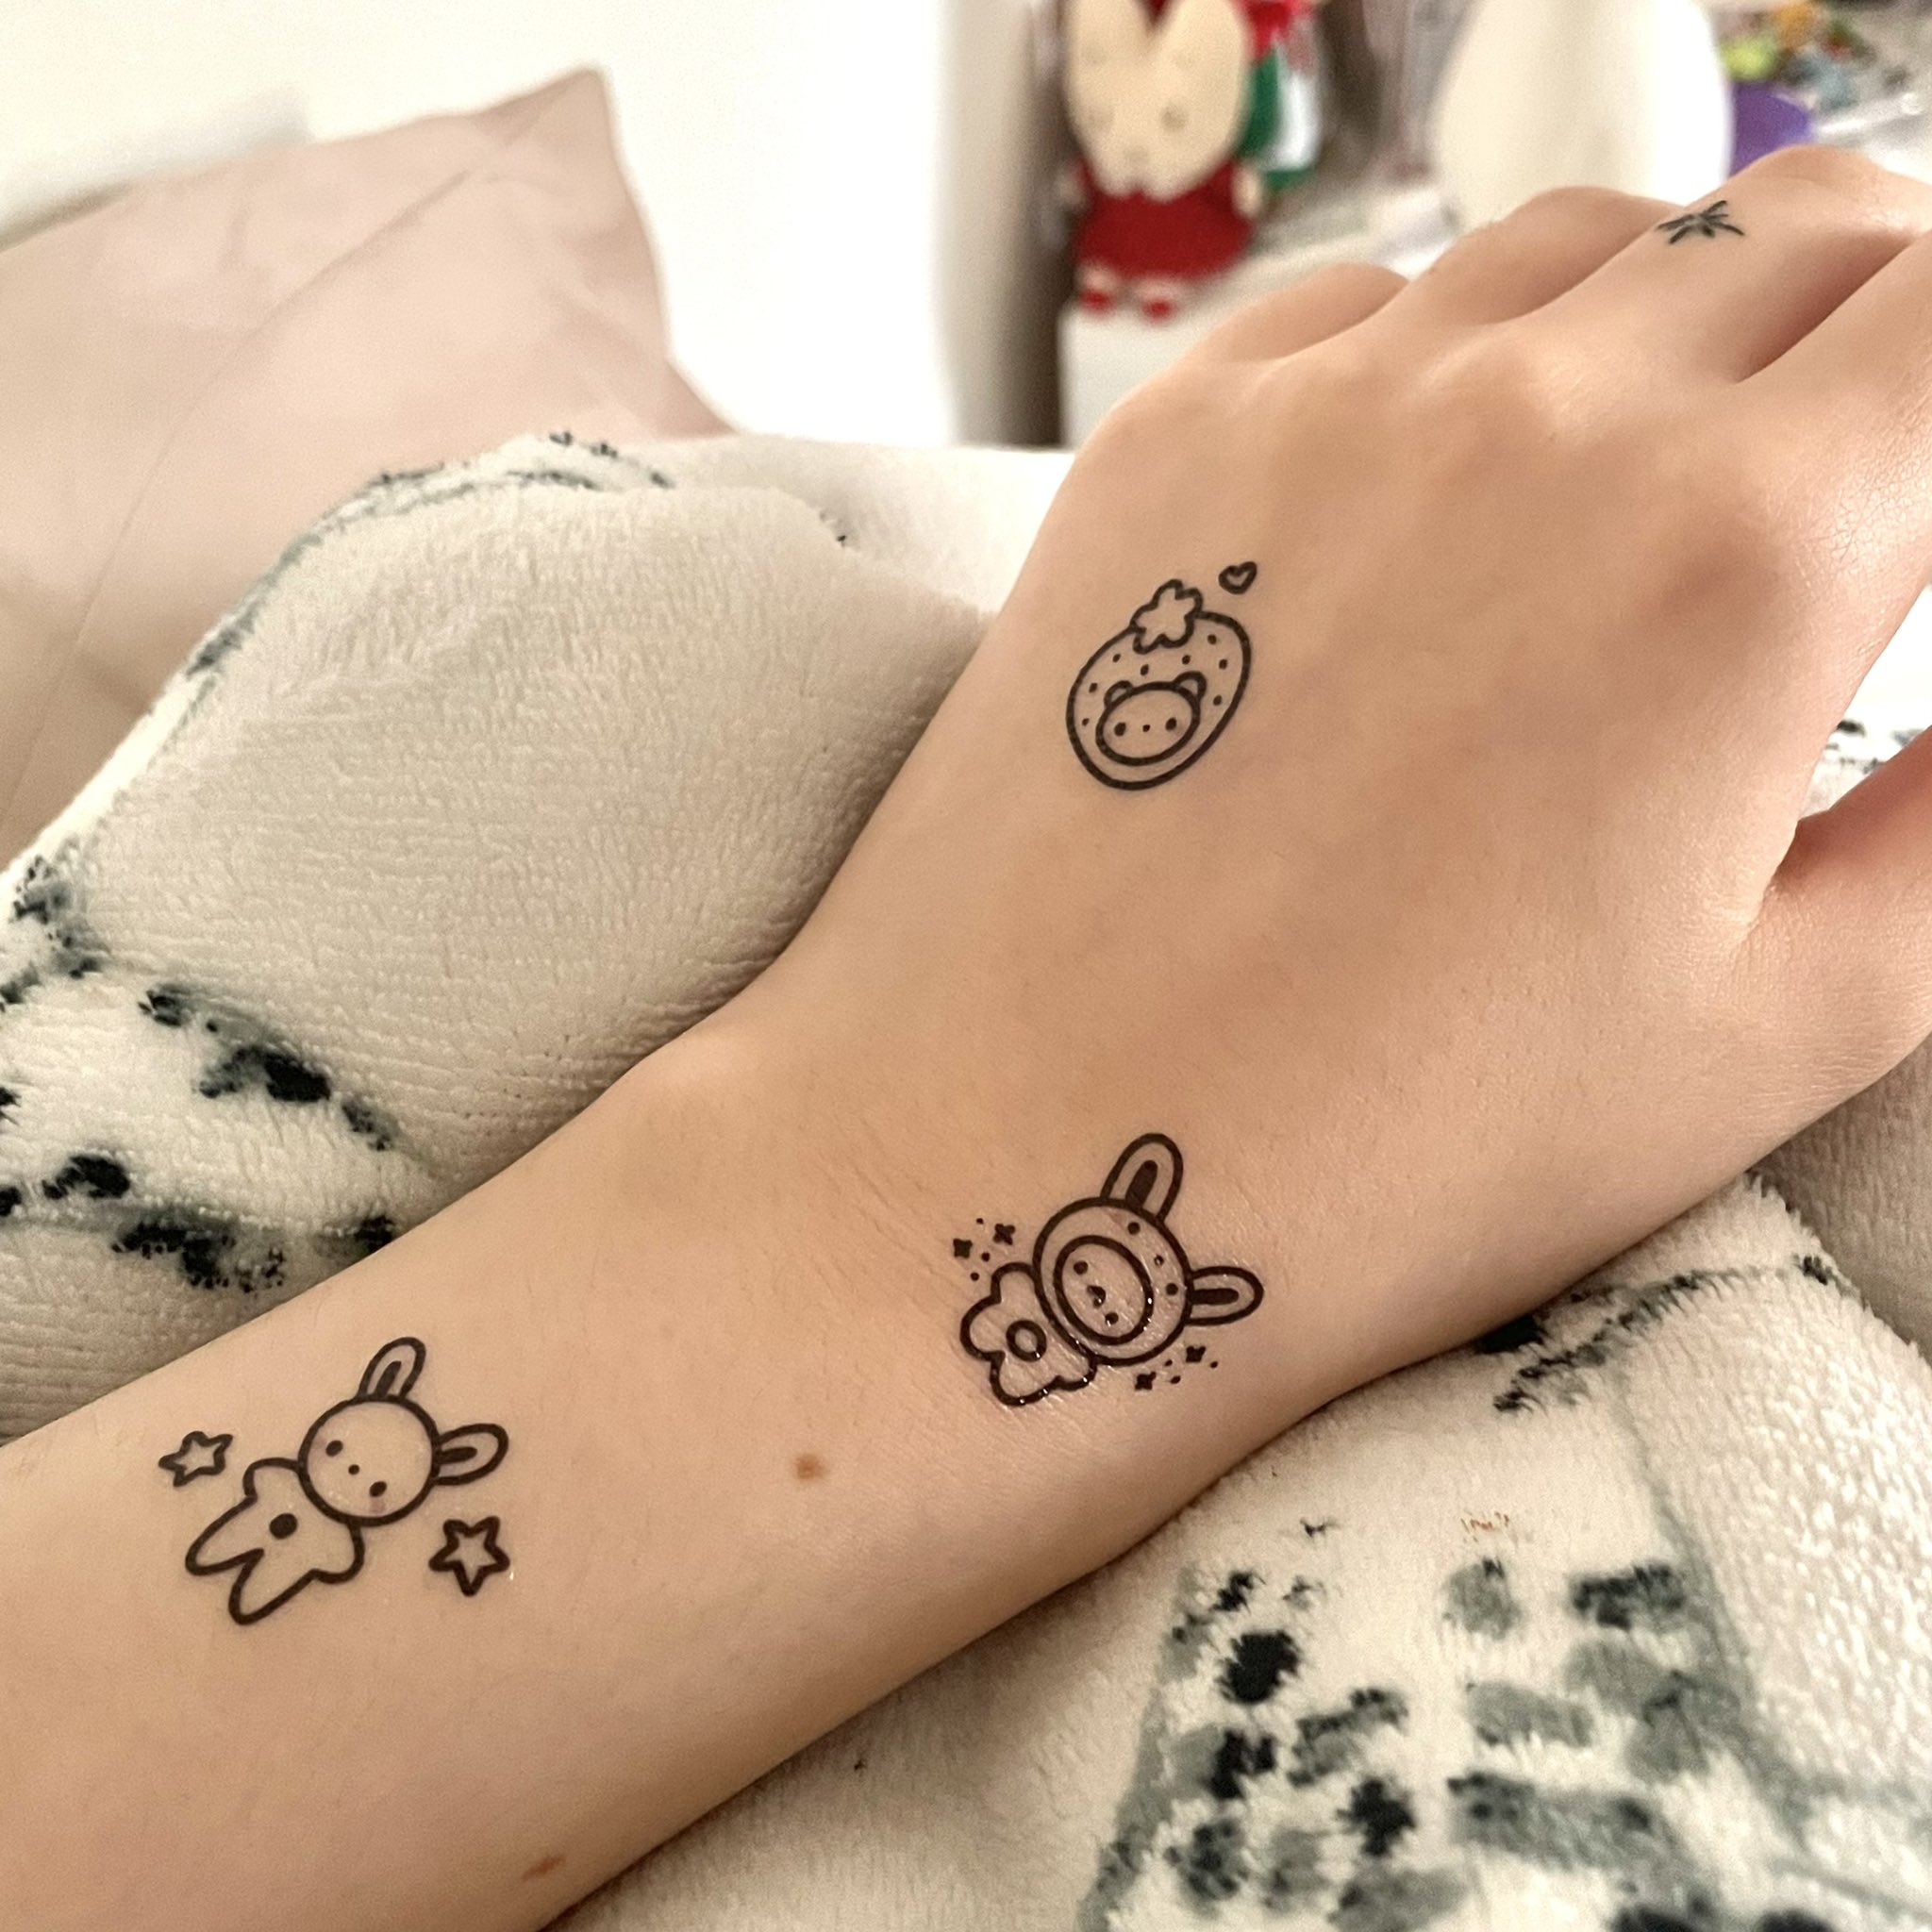 Simple Wrist Tattoo Type Mehndi Design For EID - Simple Wrist Mehndi Design  For EID 2020 - video Dailymotion